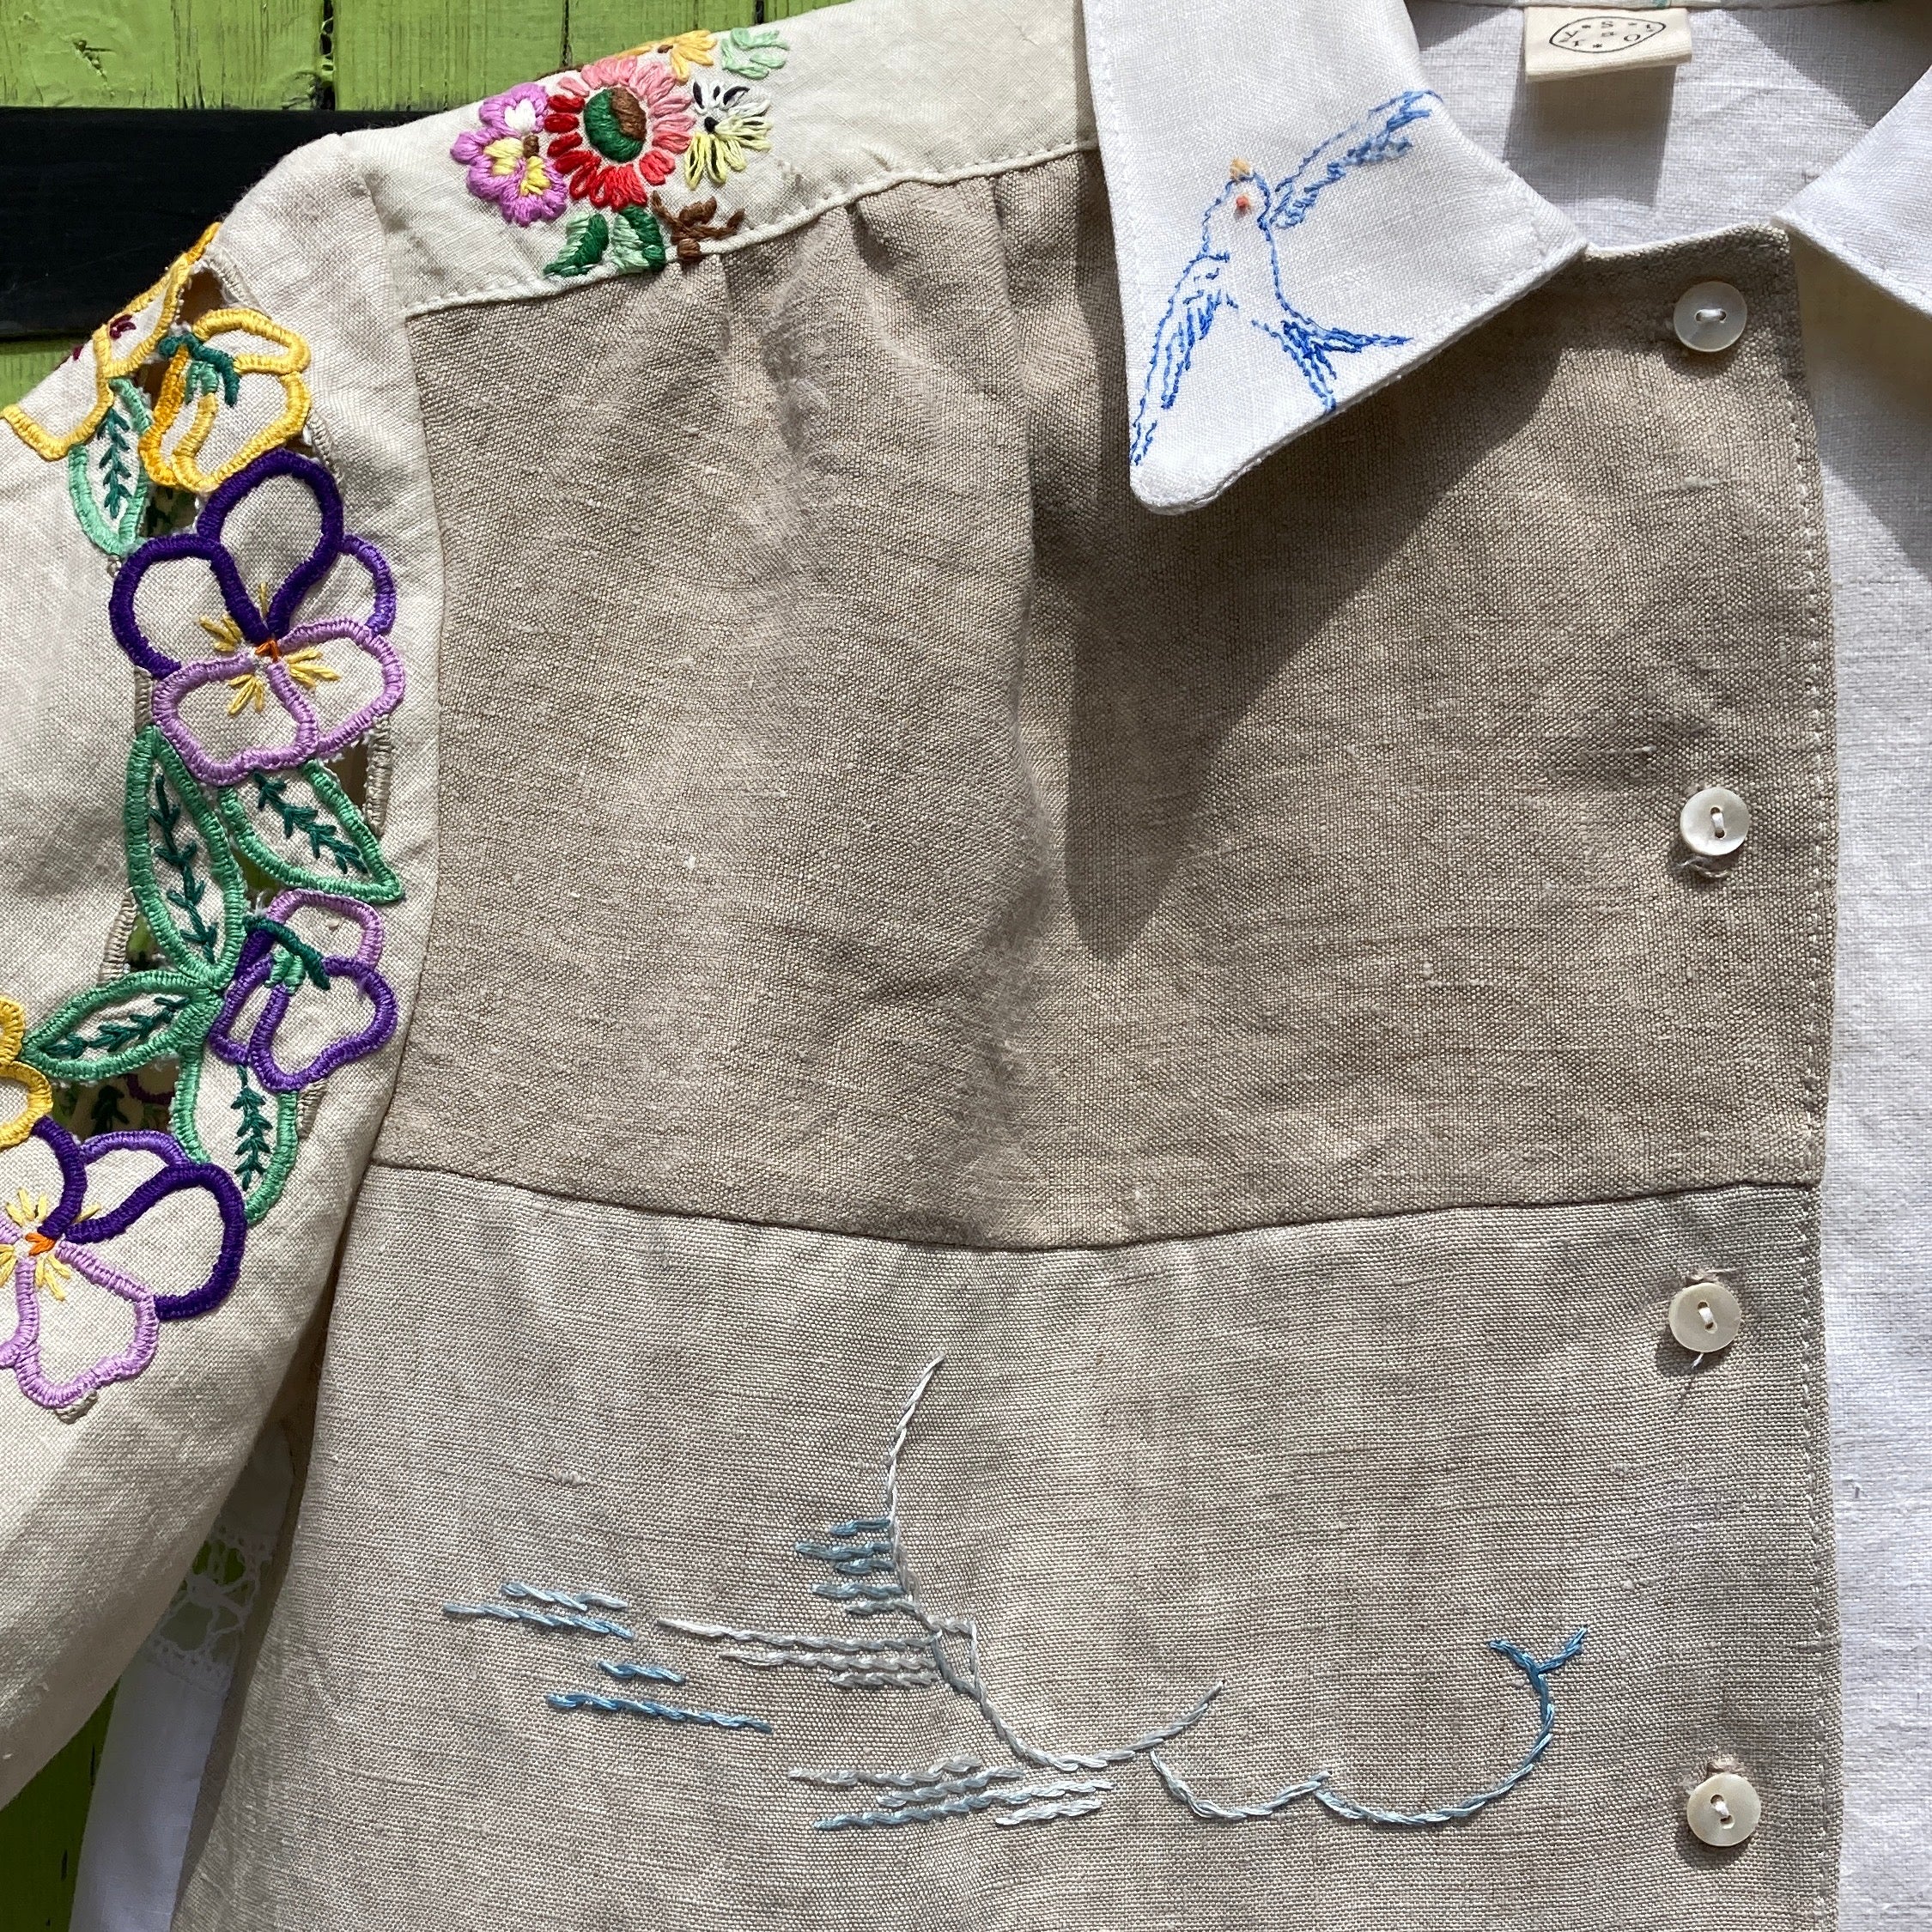 Handmade bluebird patchwork tablecloth shirt – a circular story